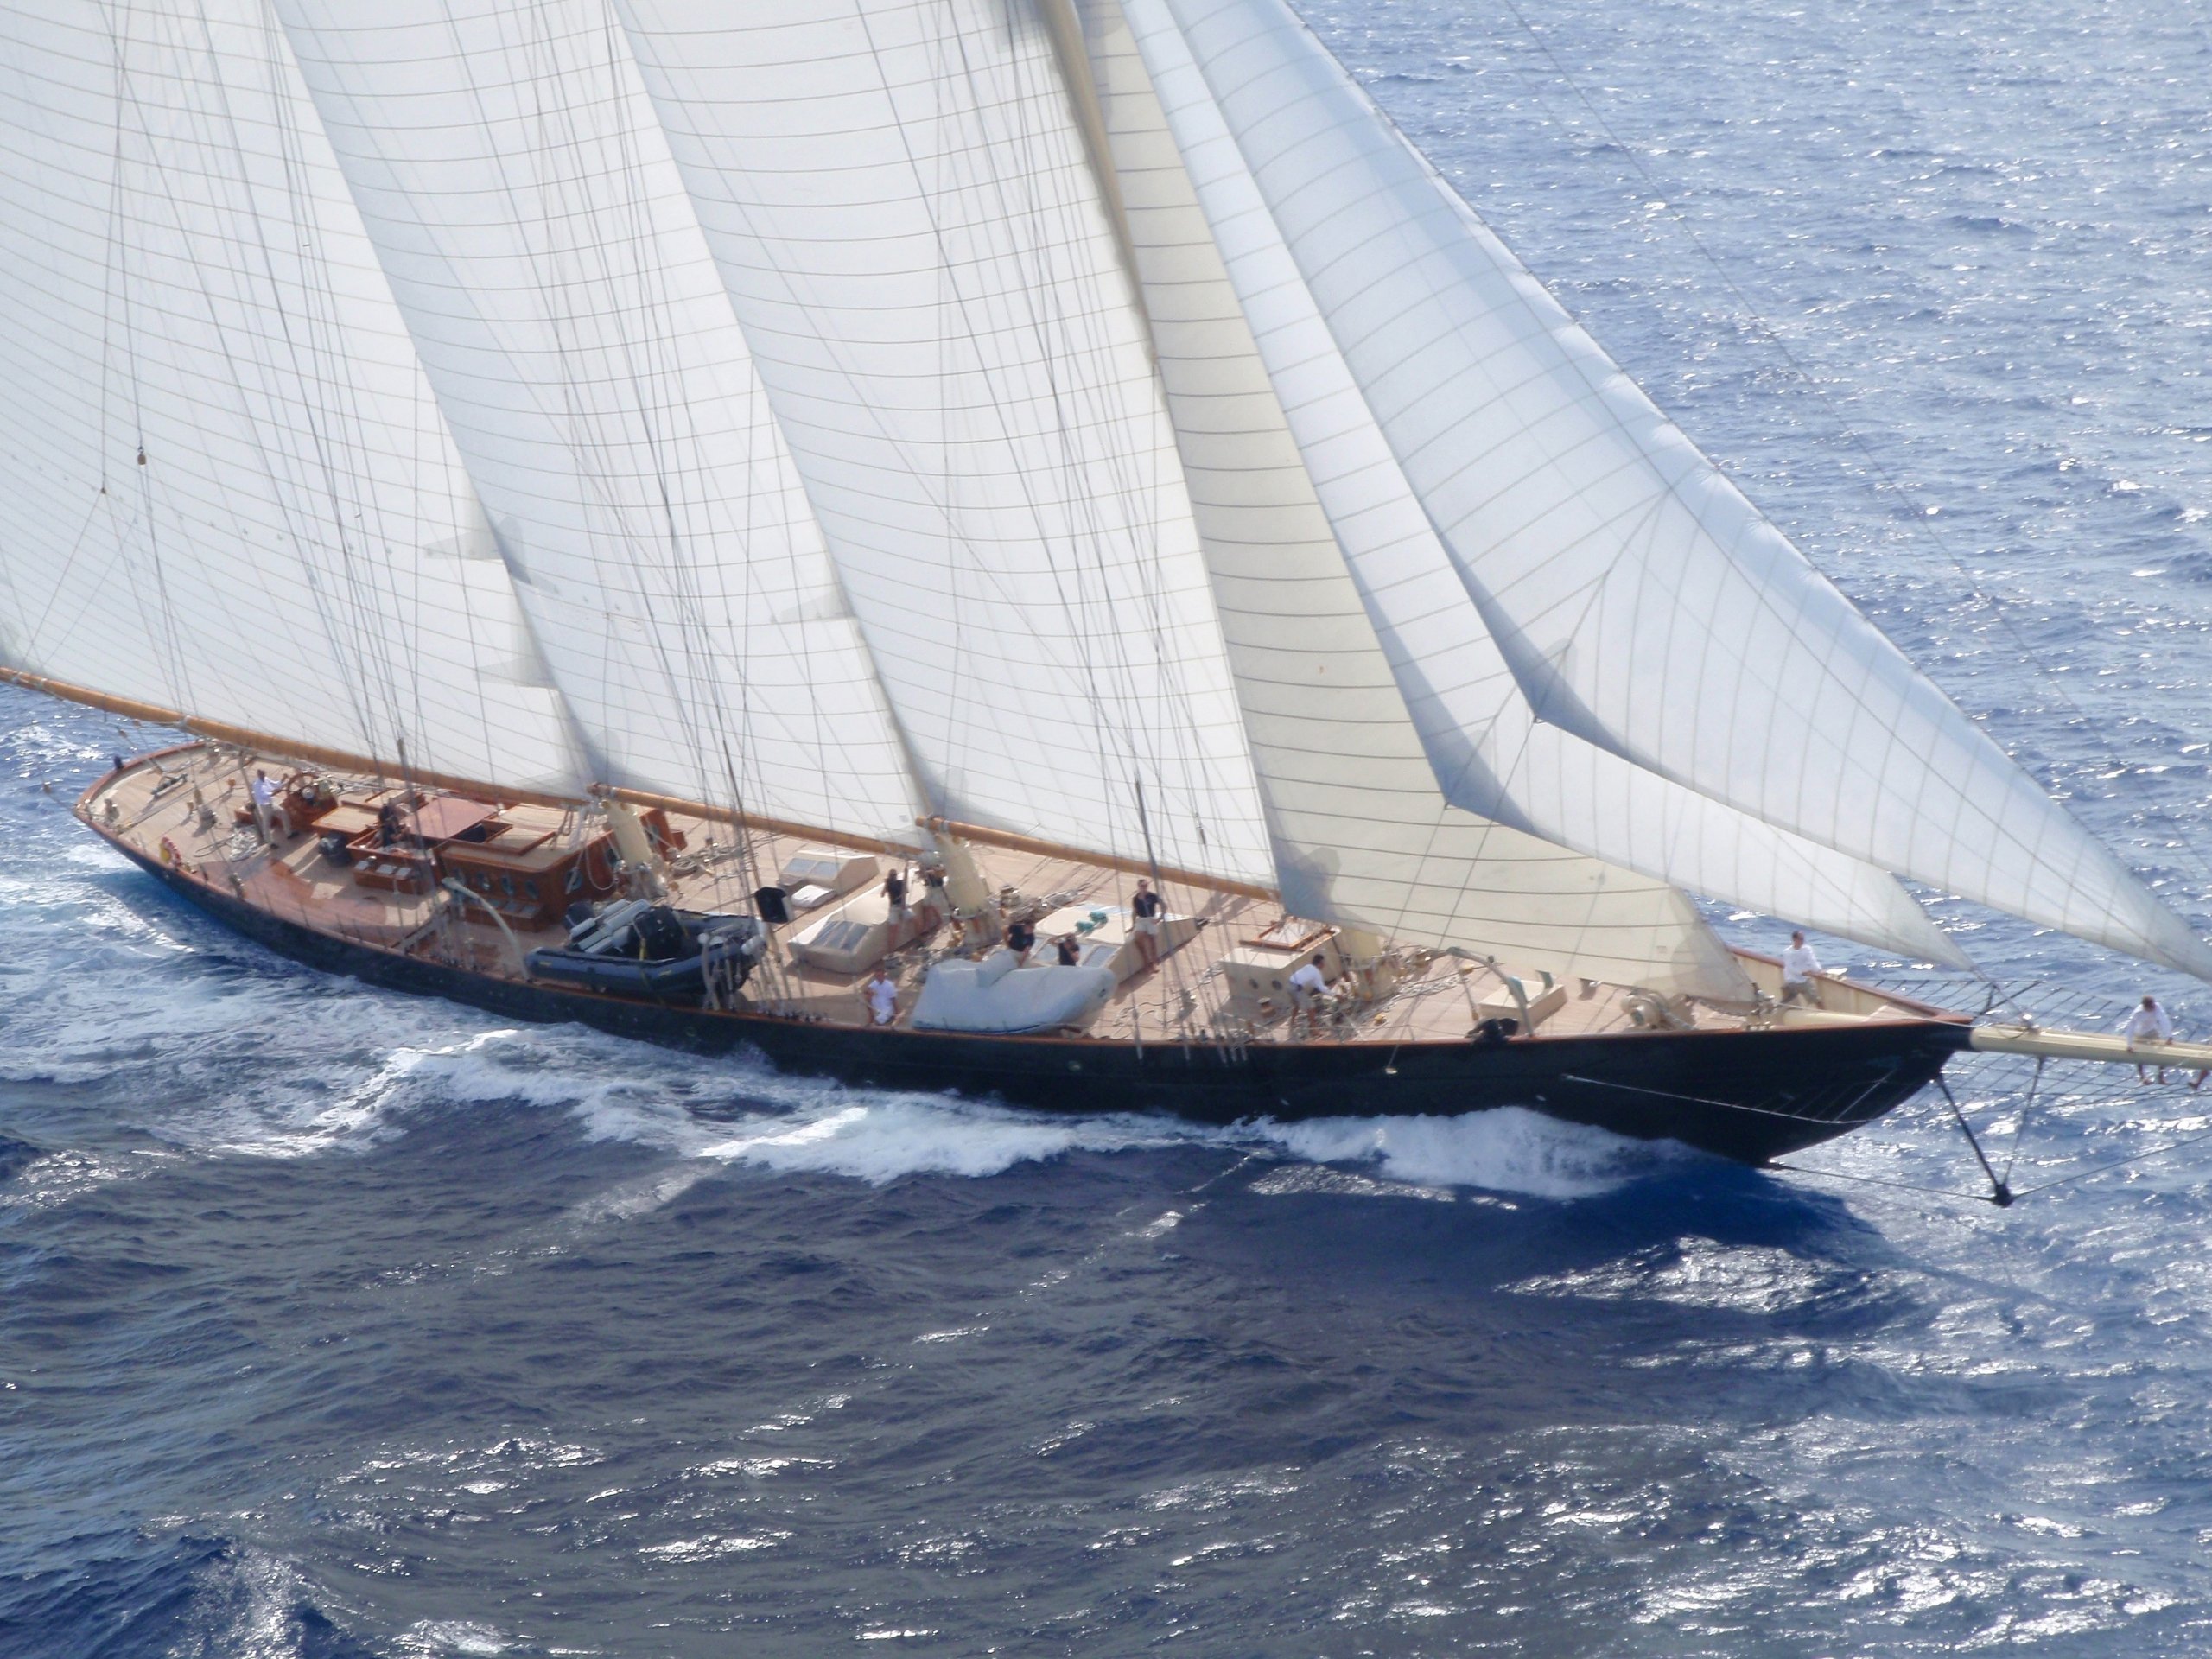 ATLANTIC Yacht • Ed Kastelein $25M Sailing Superyacht • Van der Graaf • 2010